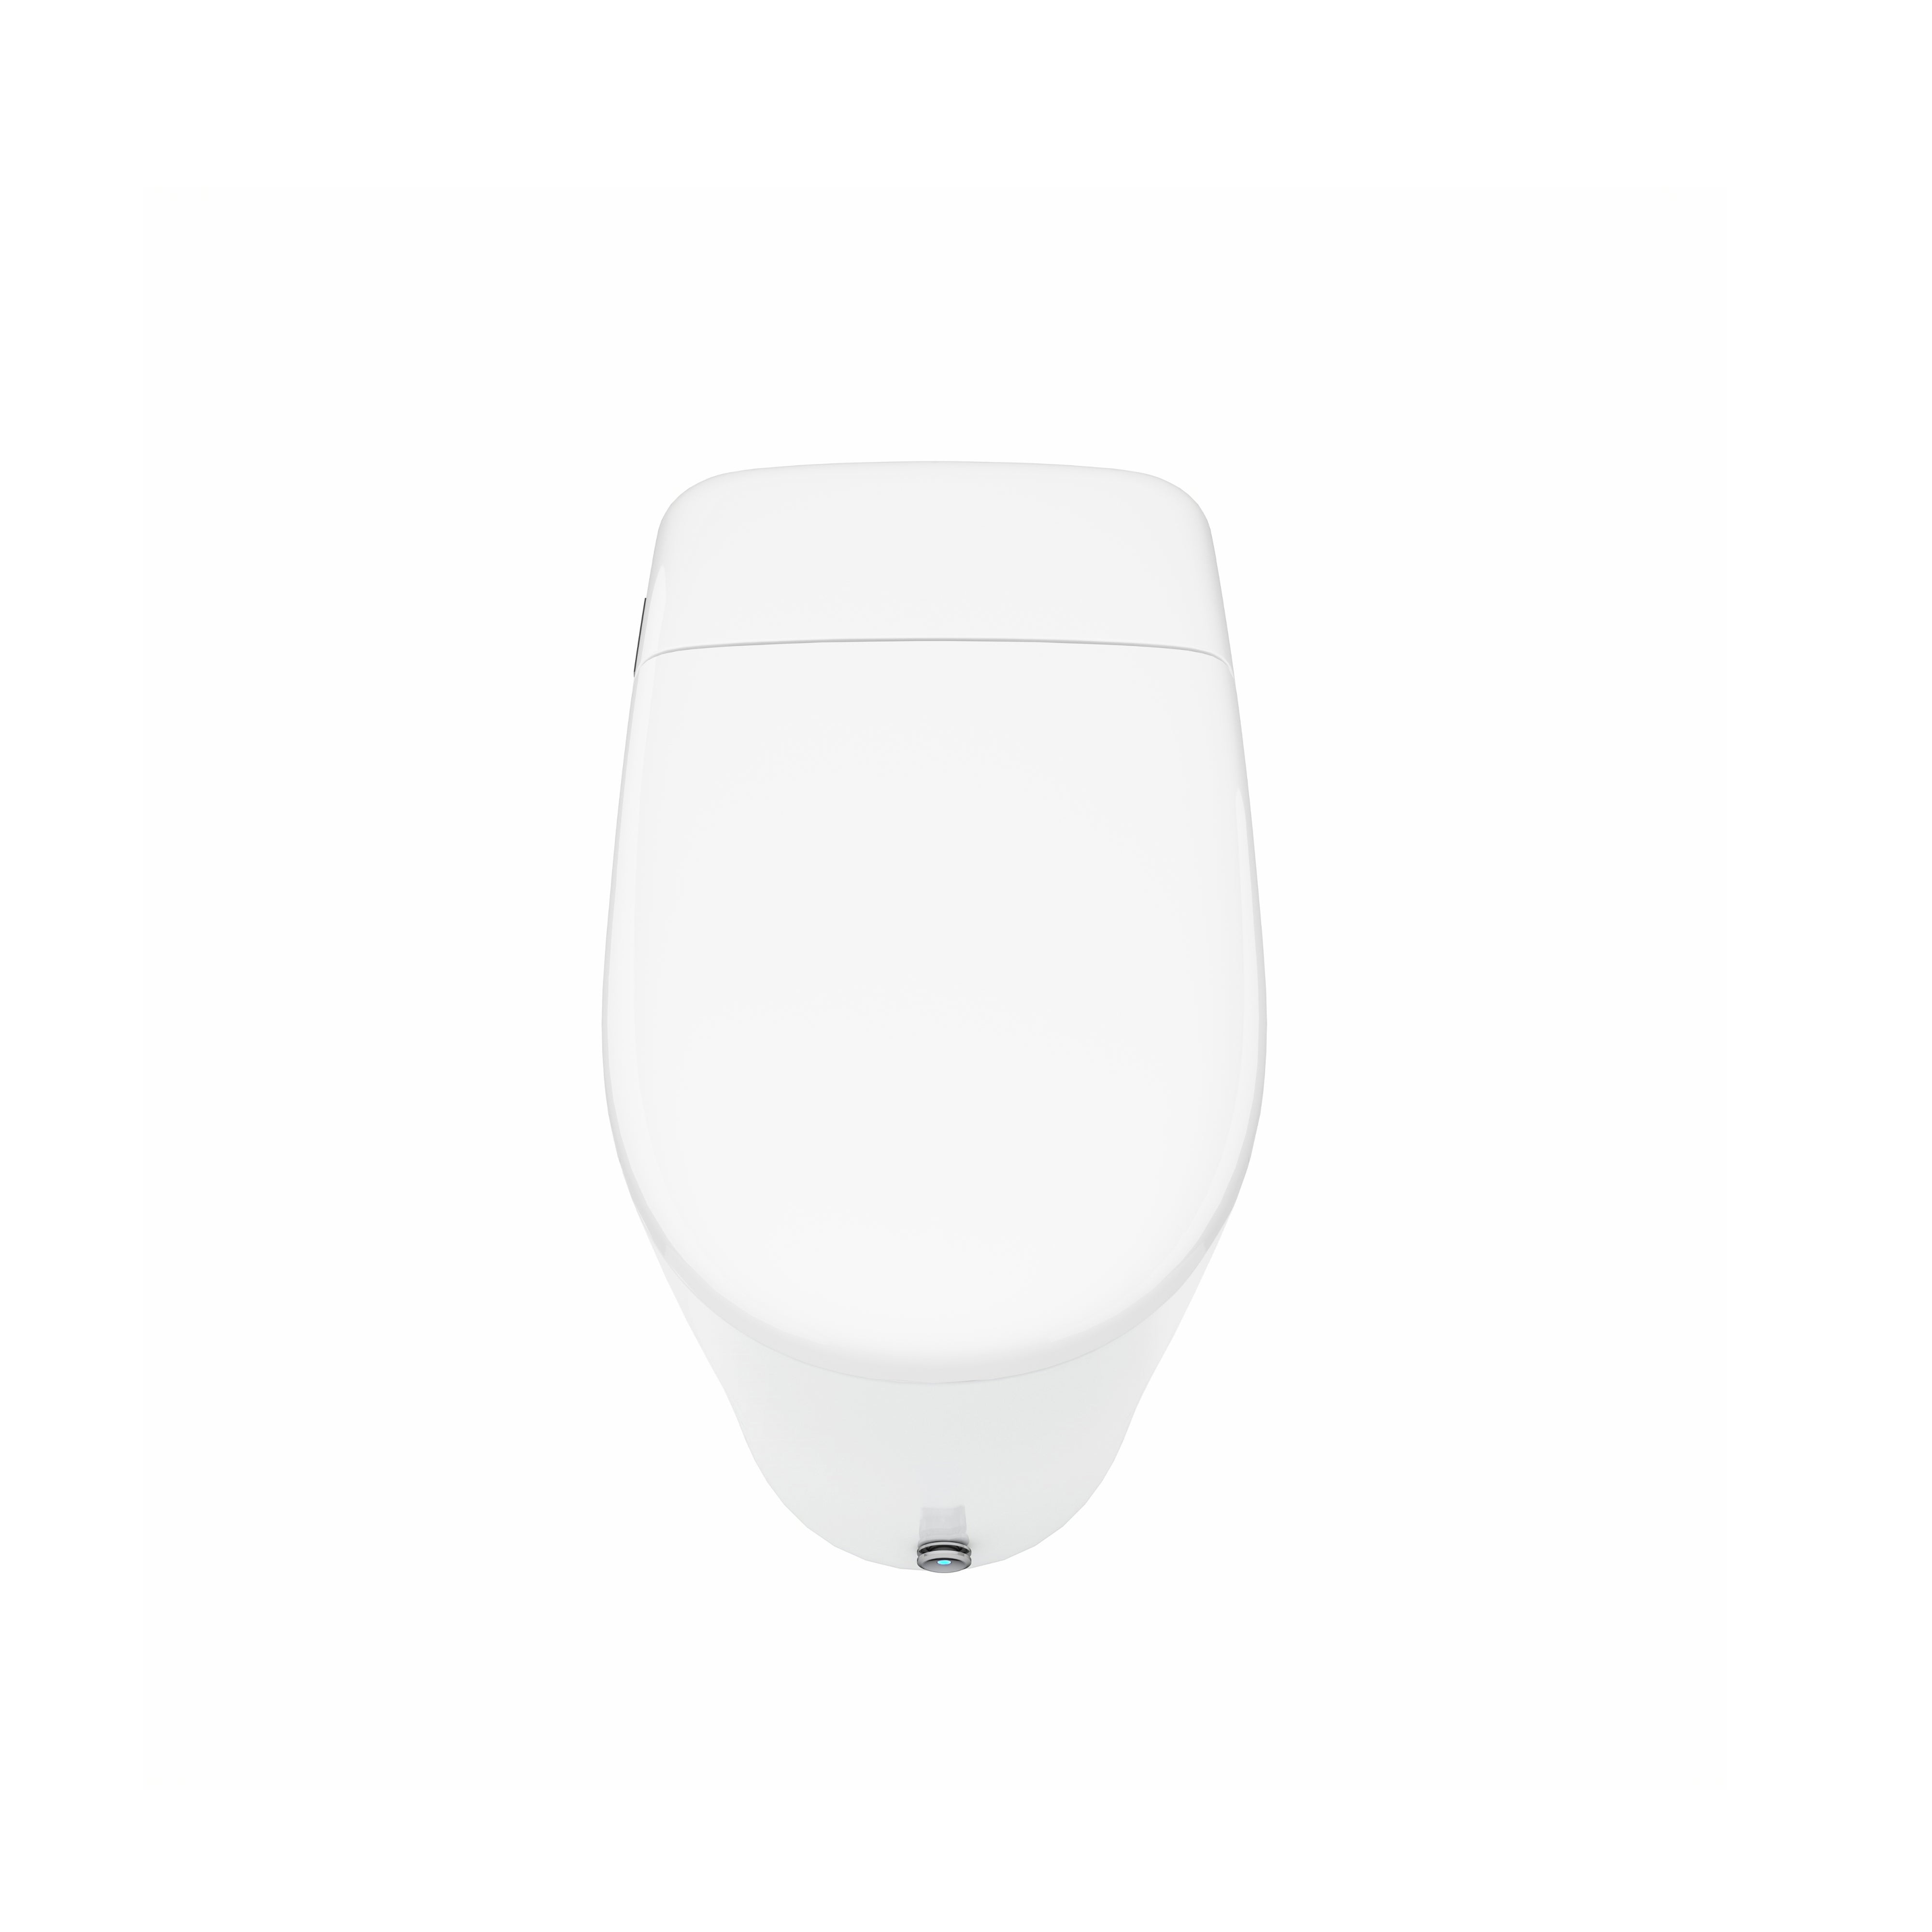 Deluxe+ Smart Toilet